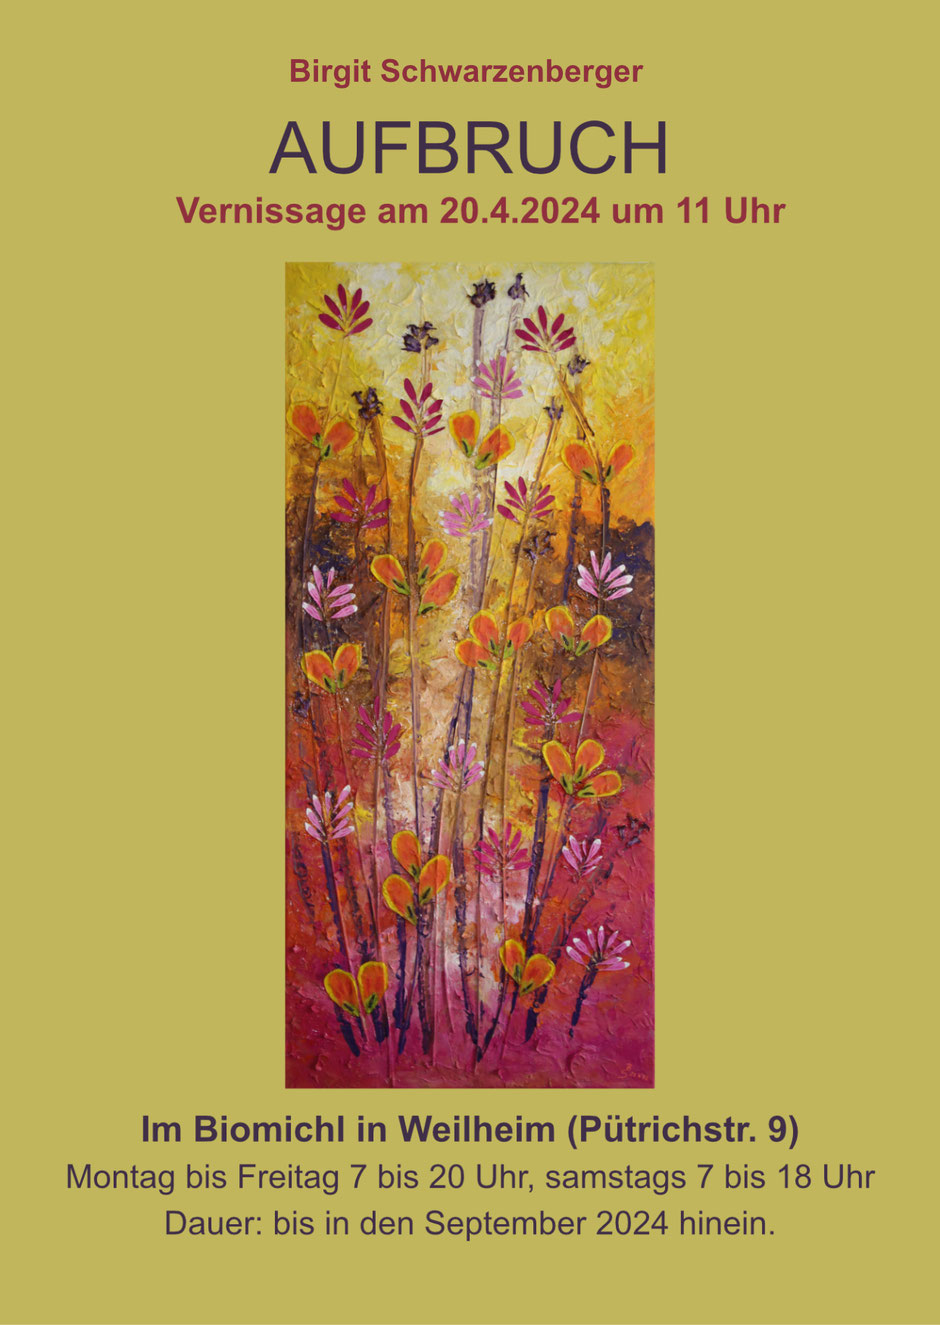 Ausstellung in Weilheim